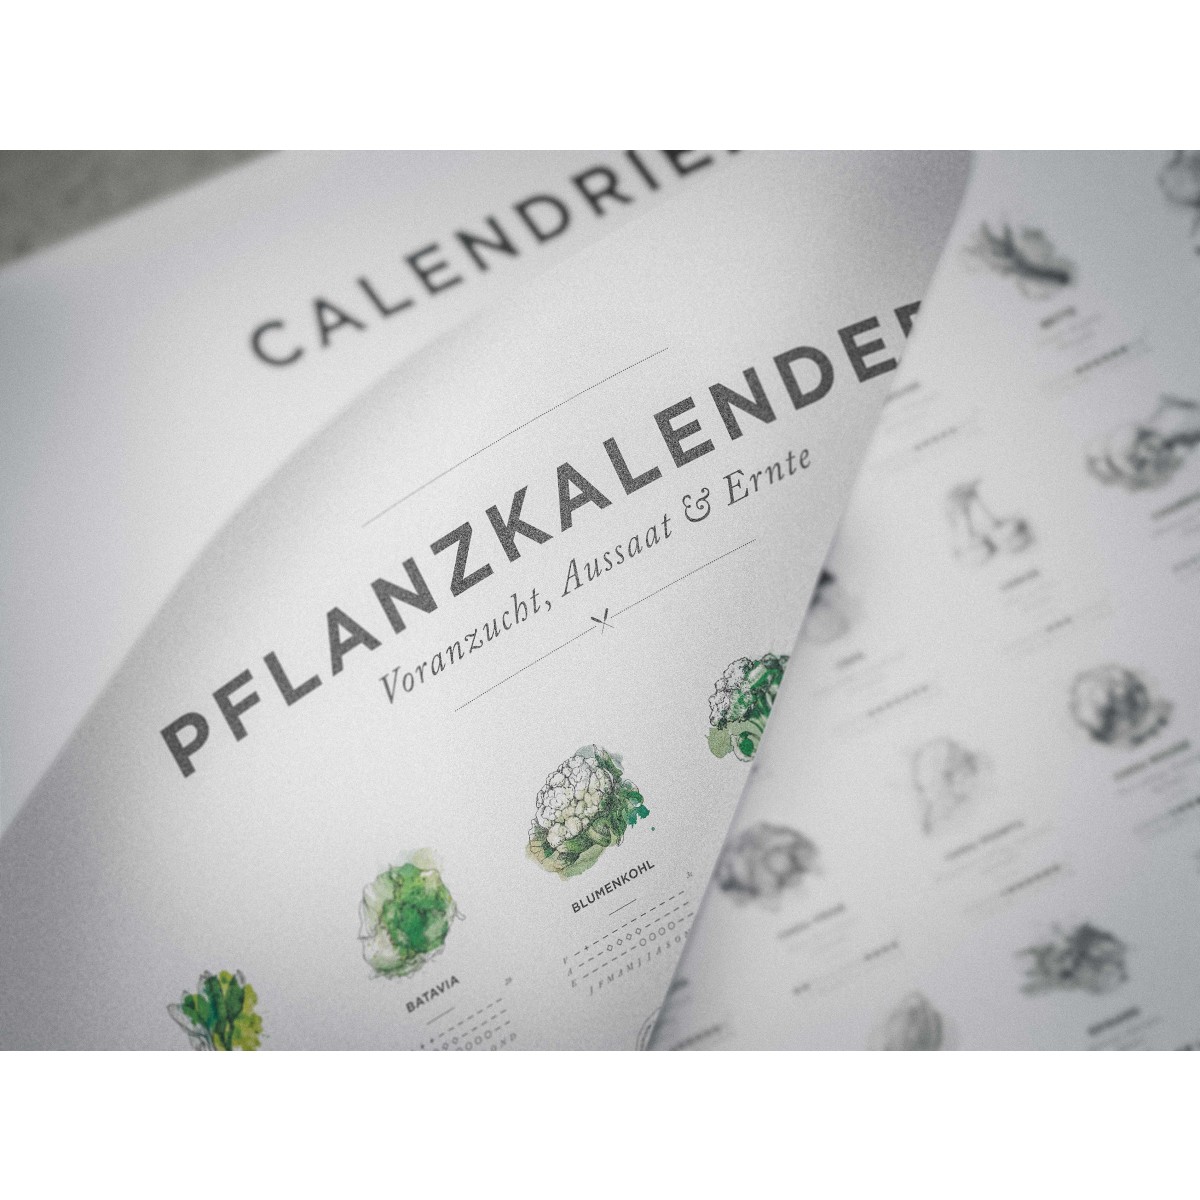 A2 Pflanzkalender und Aussaatkalender für den Garten, Aussaatzeiten für 64 verschiedene Gemüsesorten als Poster in Farbe mit und ohne Rahmen